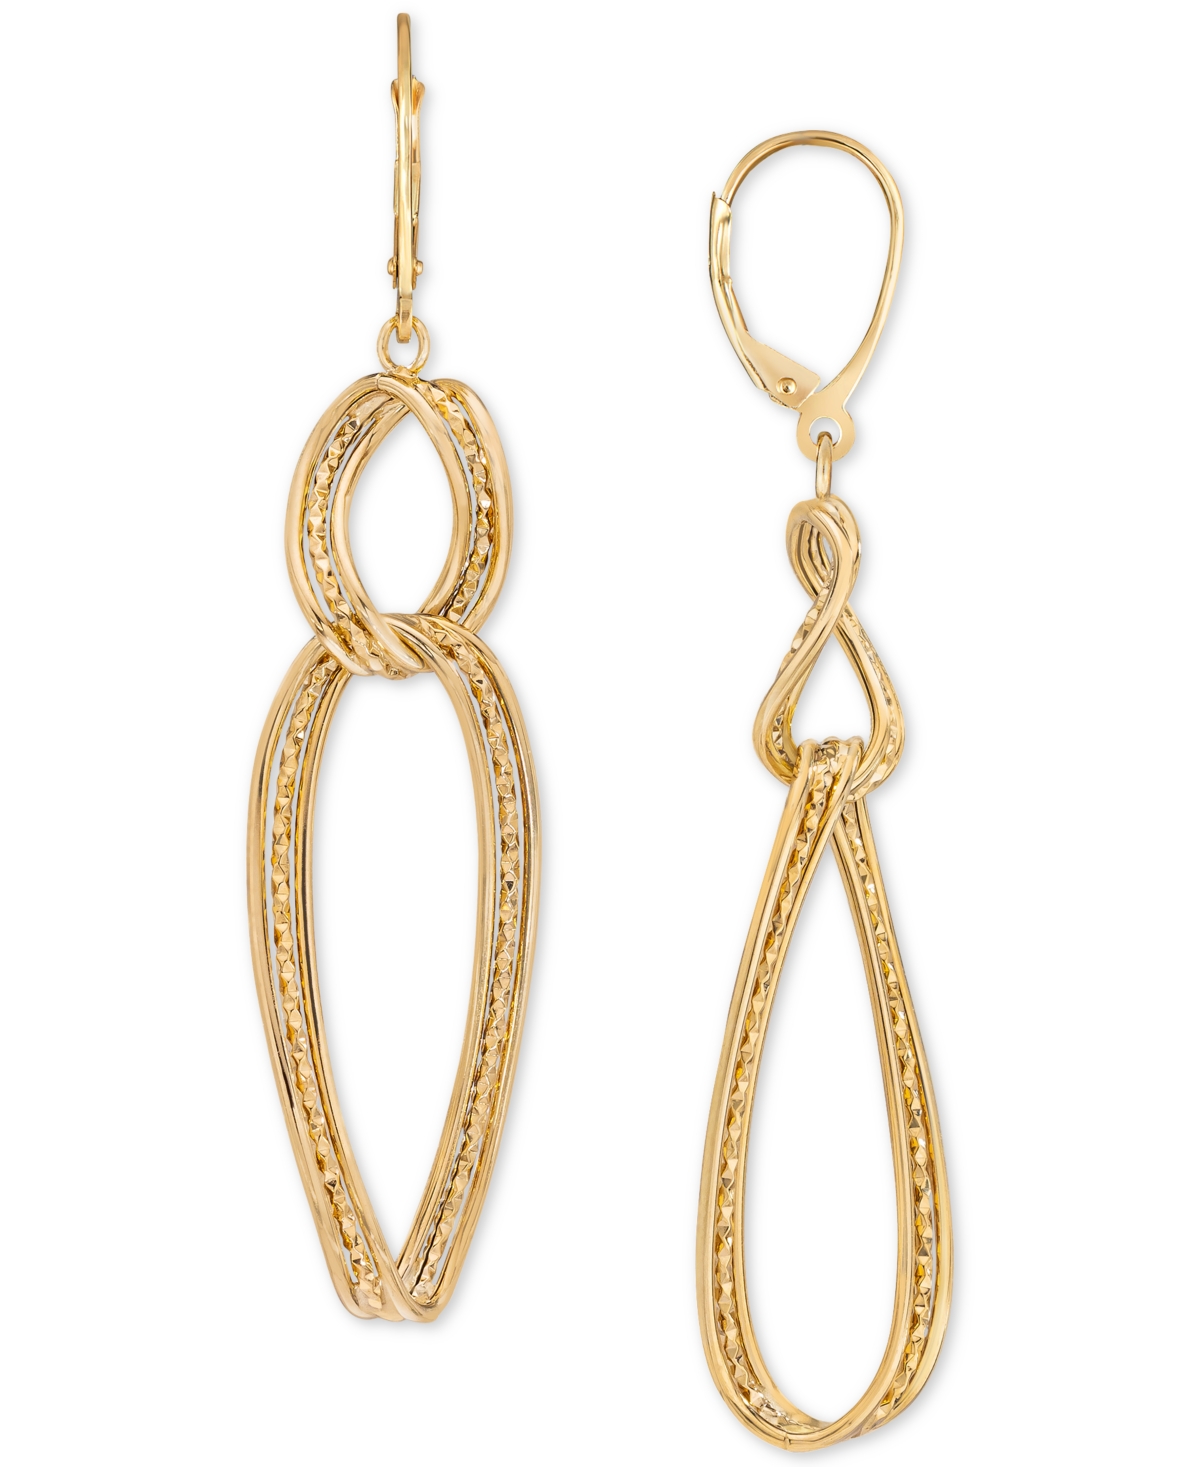 Triple-Row Twist Double Drop Earrings in 10k Gold - K Yellow Gold